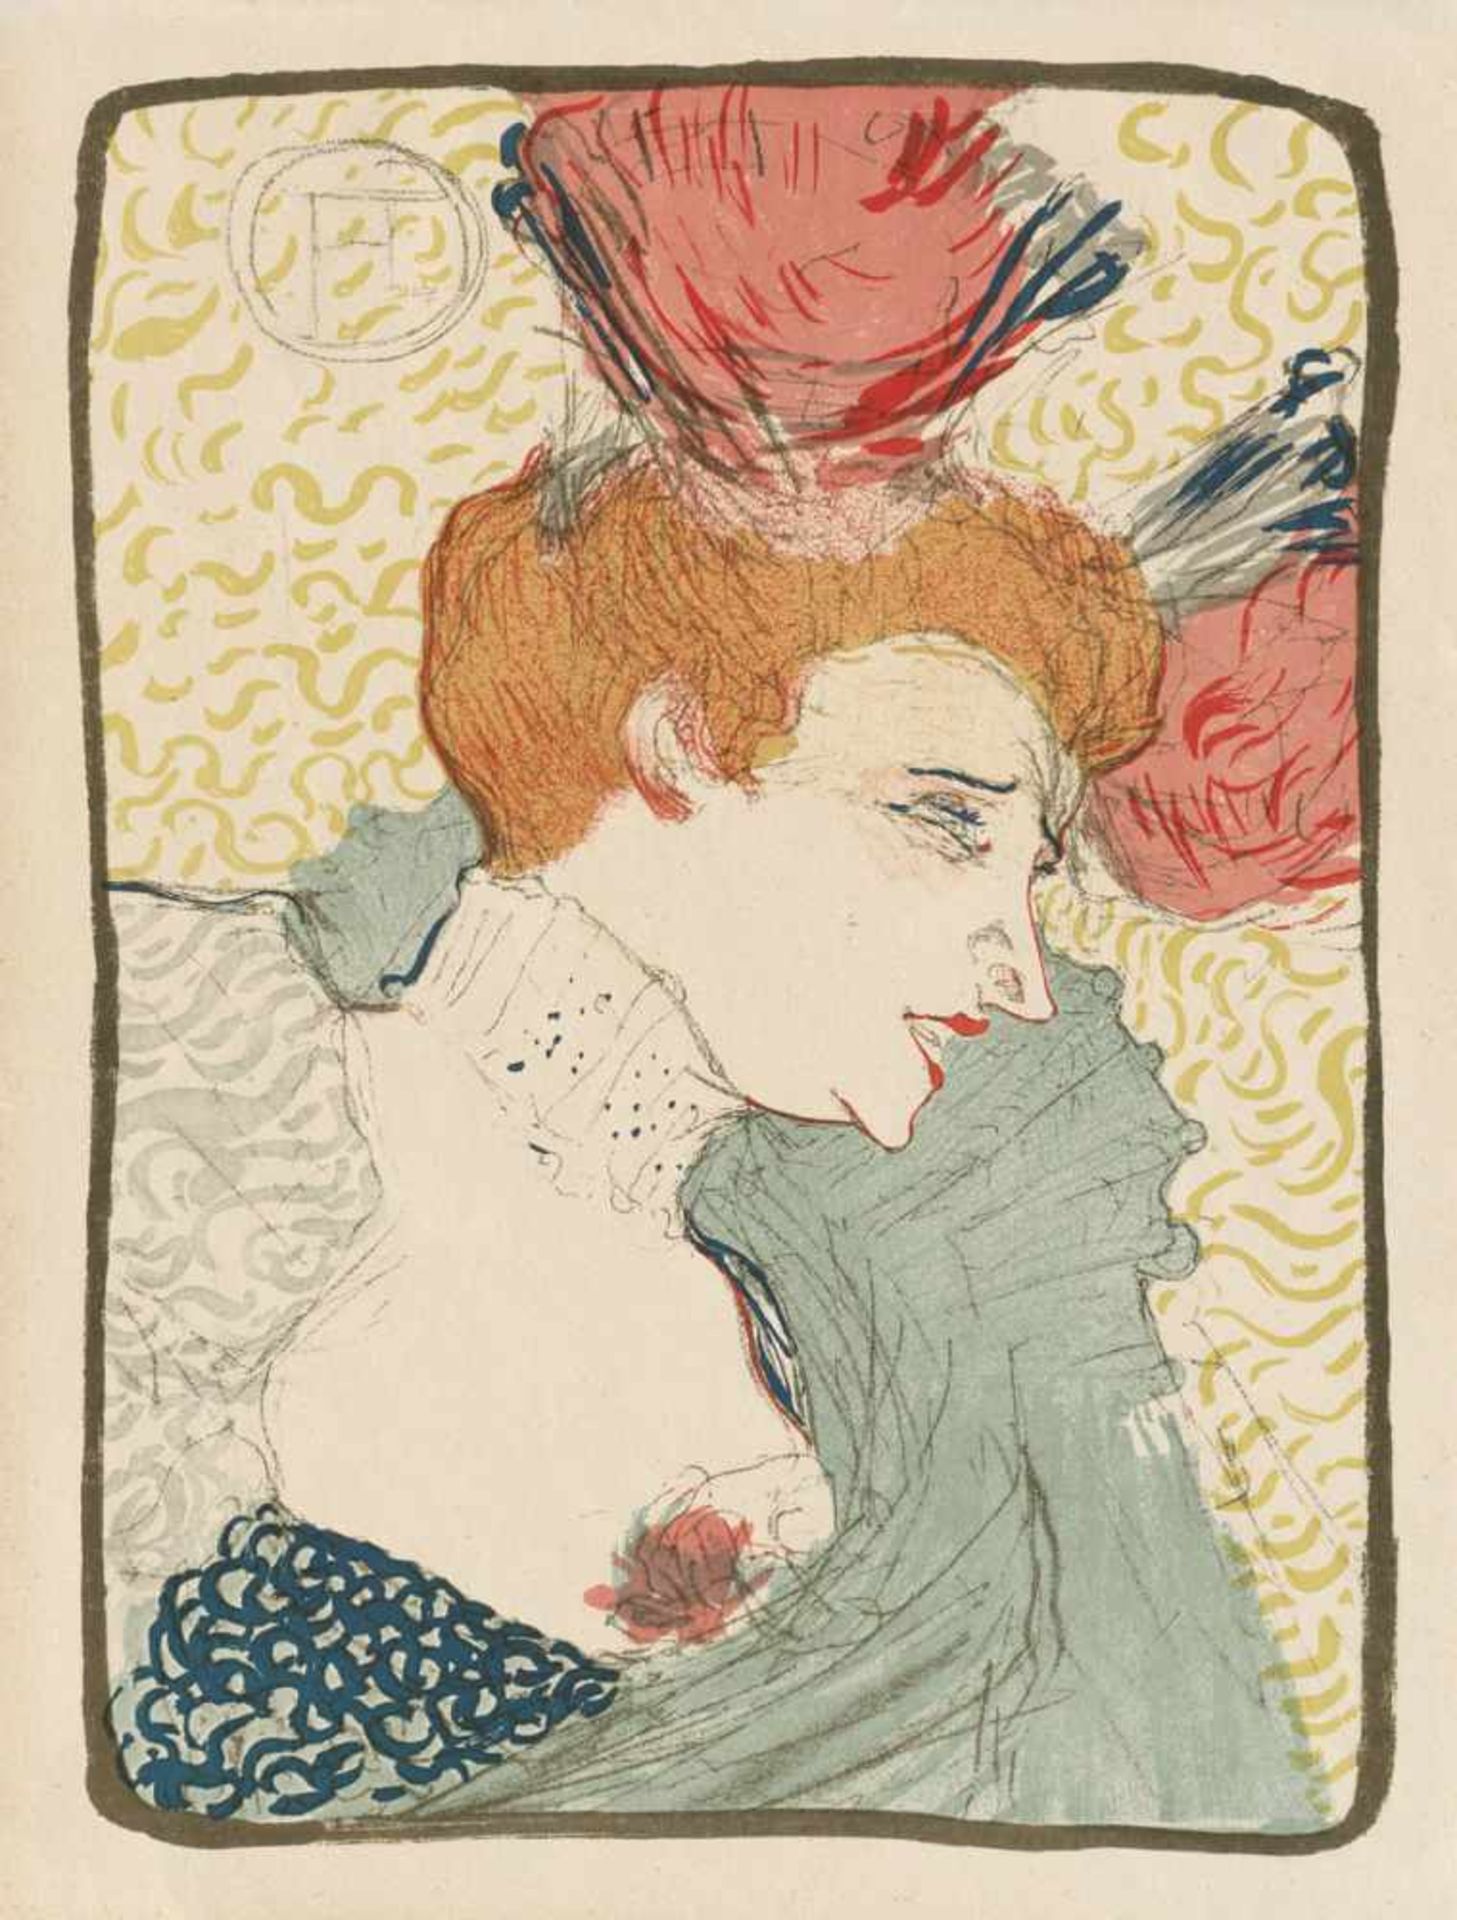 Toulouse-Lautrec, Henri de: Mademoiselle Marcelle Lender, en BusteToulouse-Lautrec, Henri de.